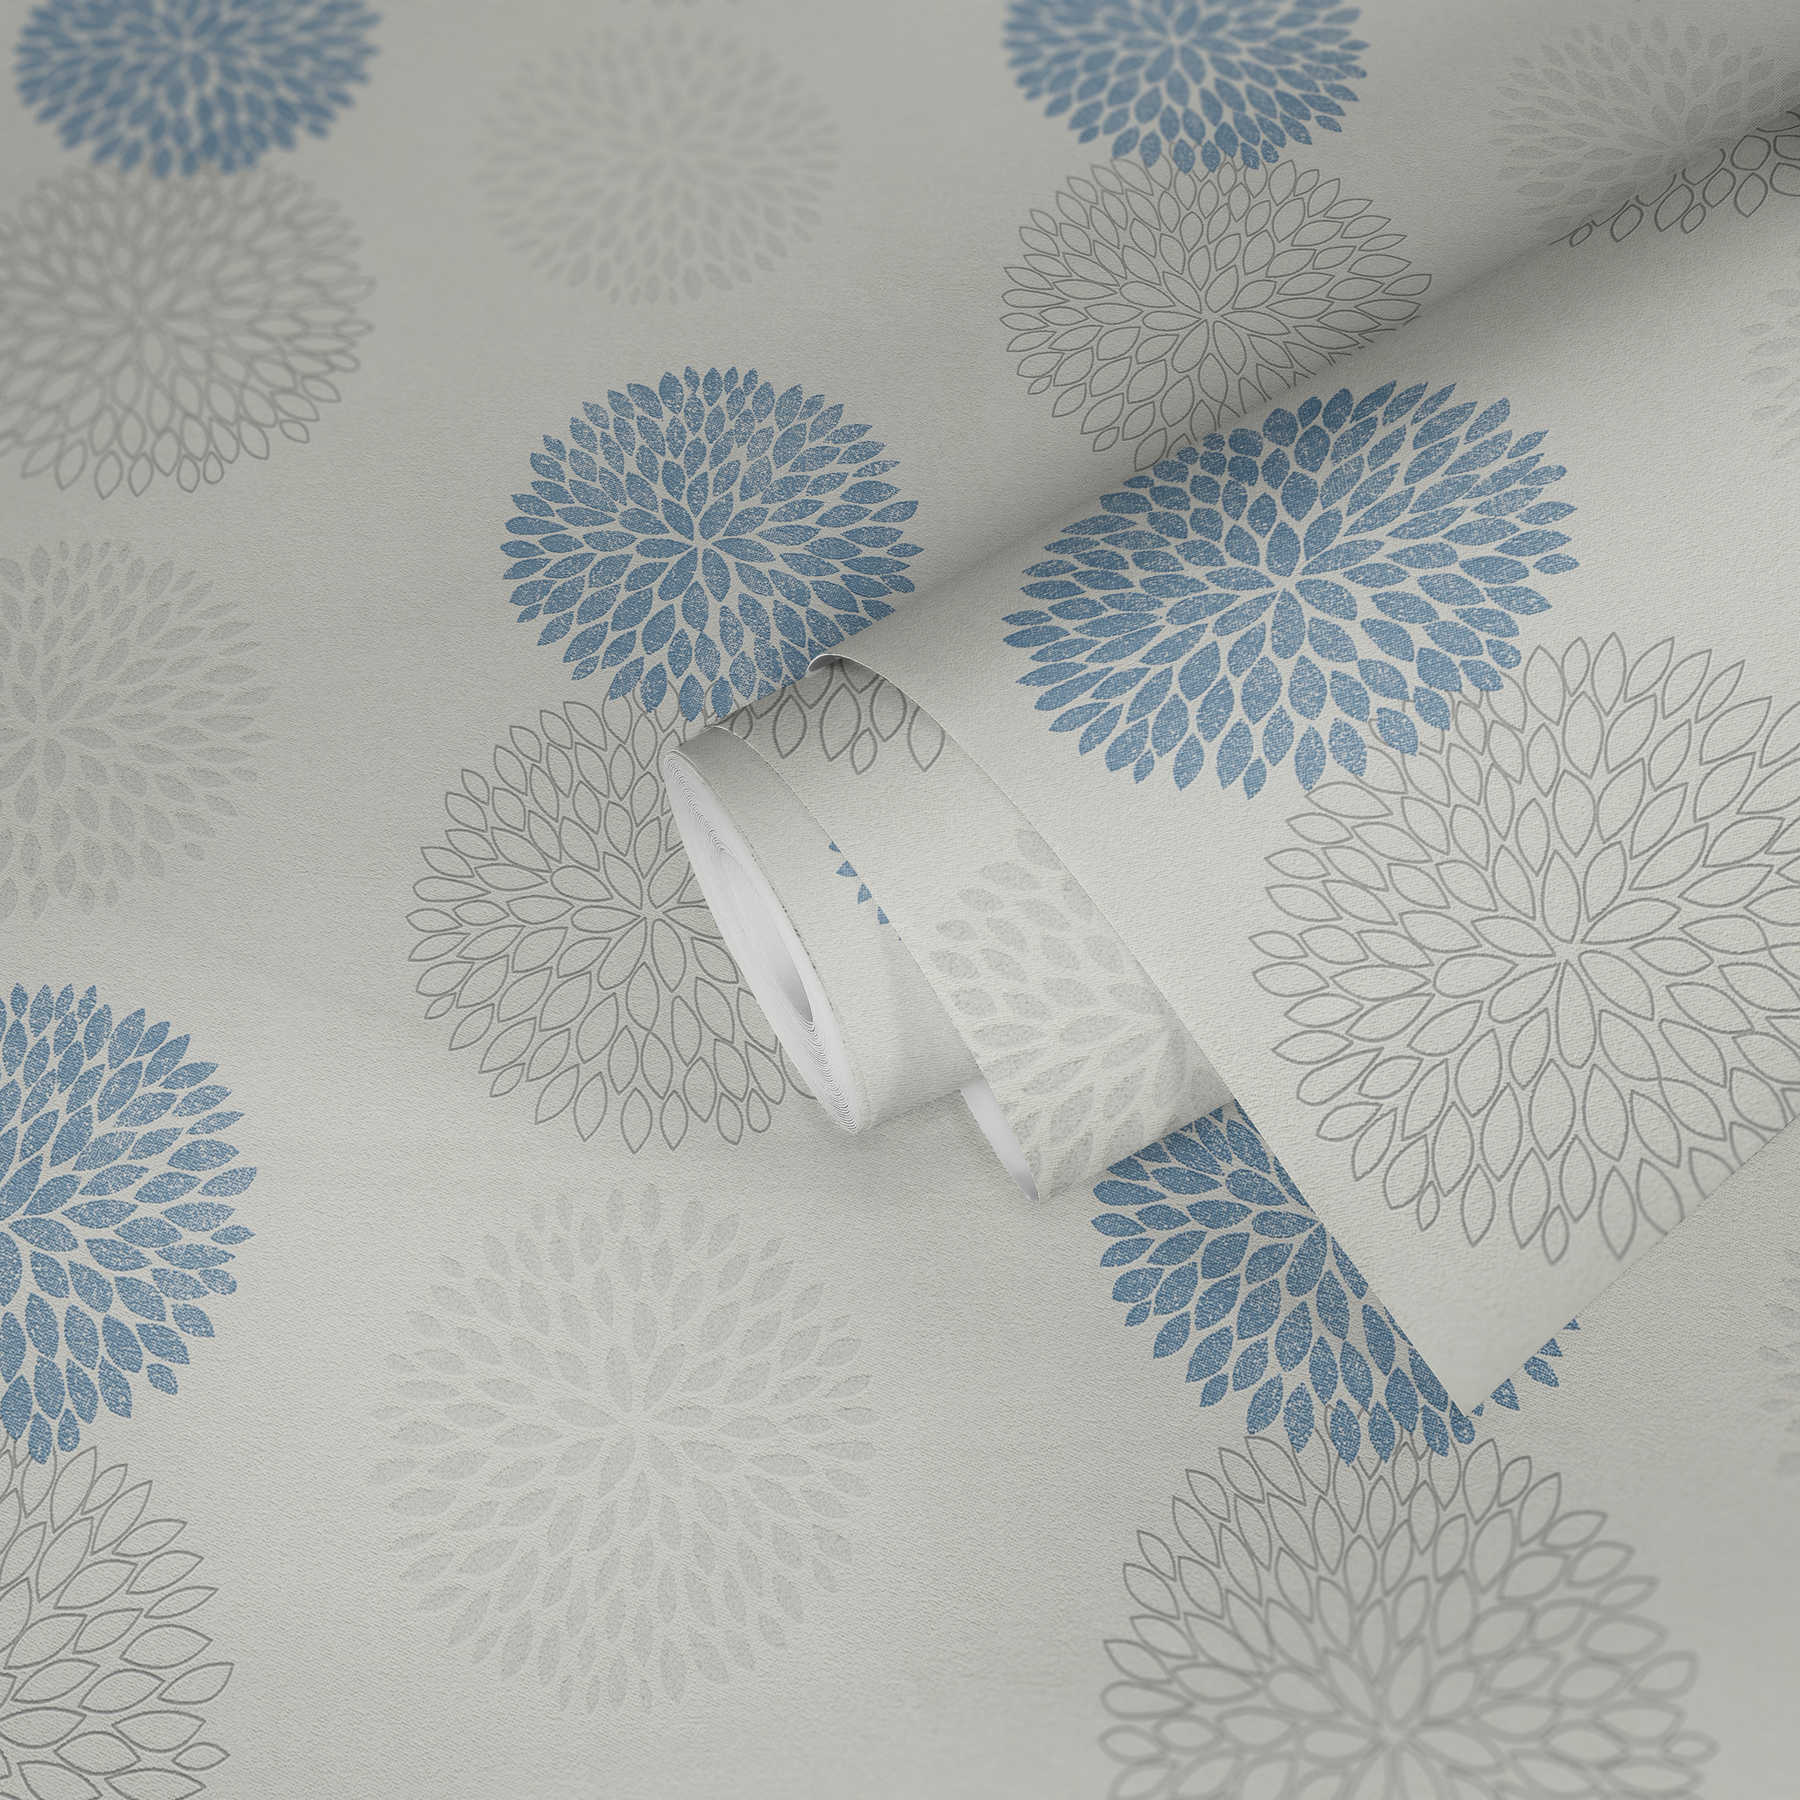             Papier peint avec motif graphique de fleurs - bleu, gris, blanc
        